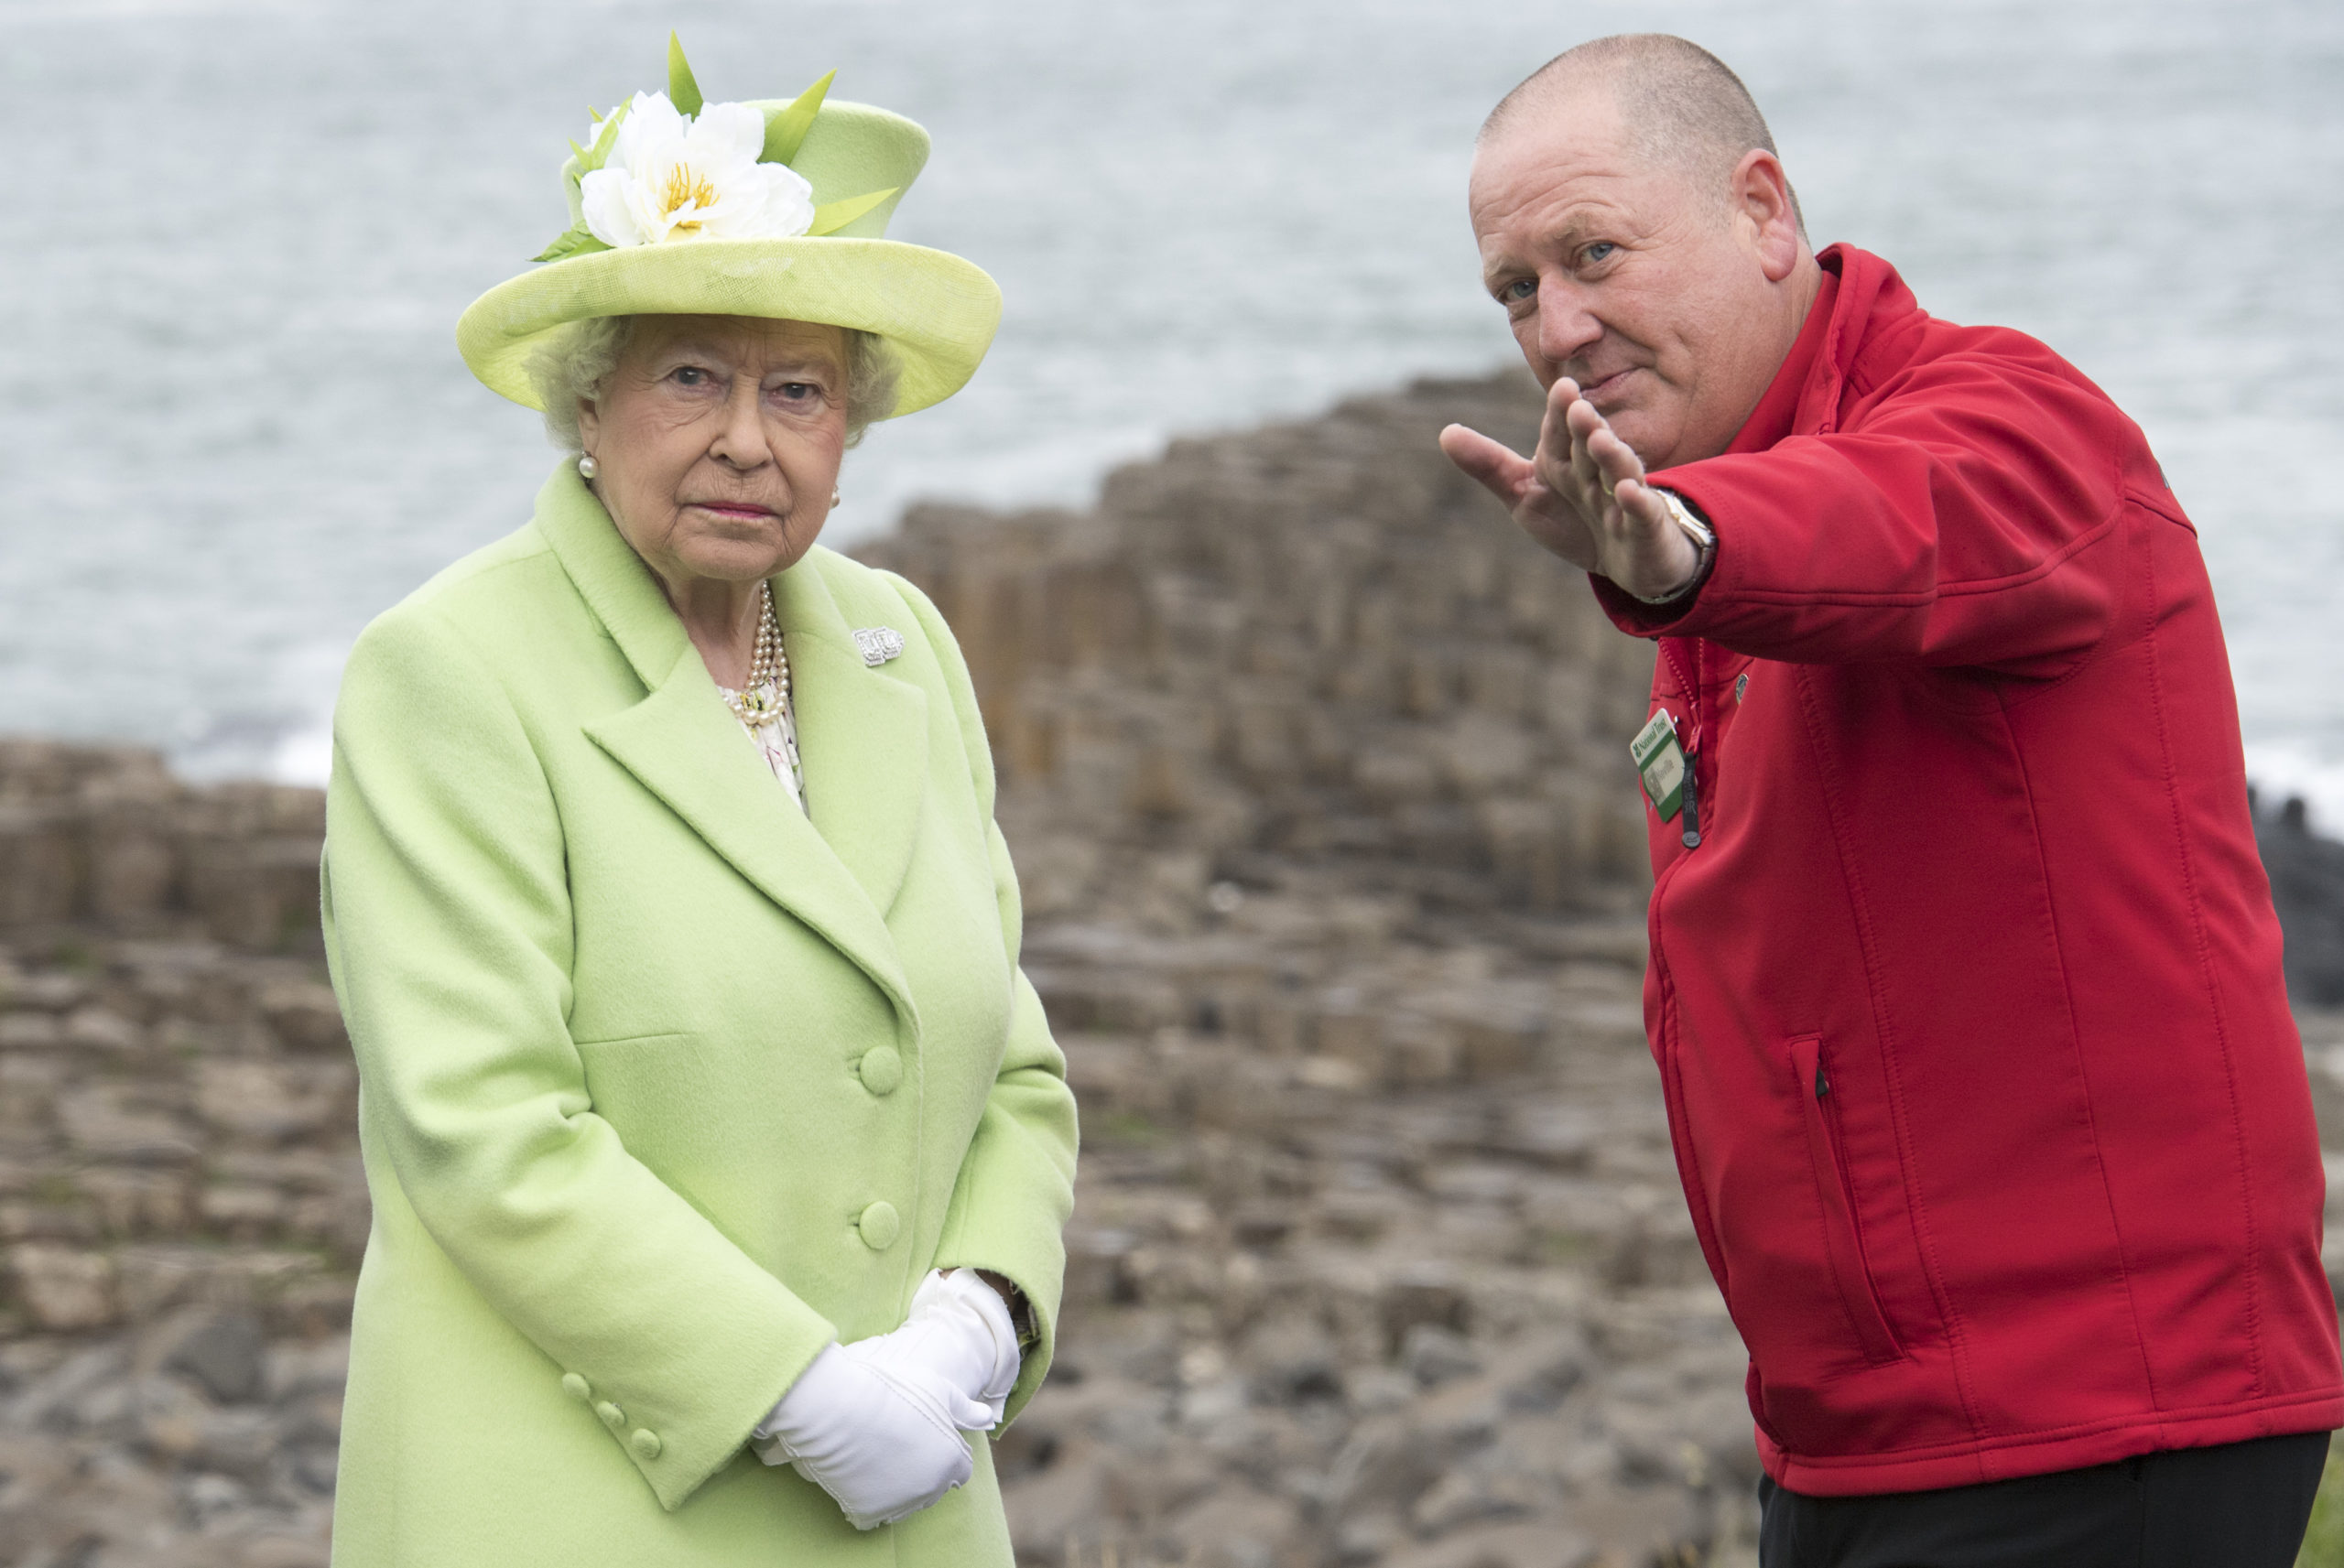 The Queen & Duke Of Edinburgh Visit Northern Ireland